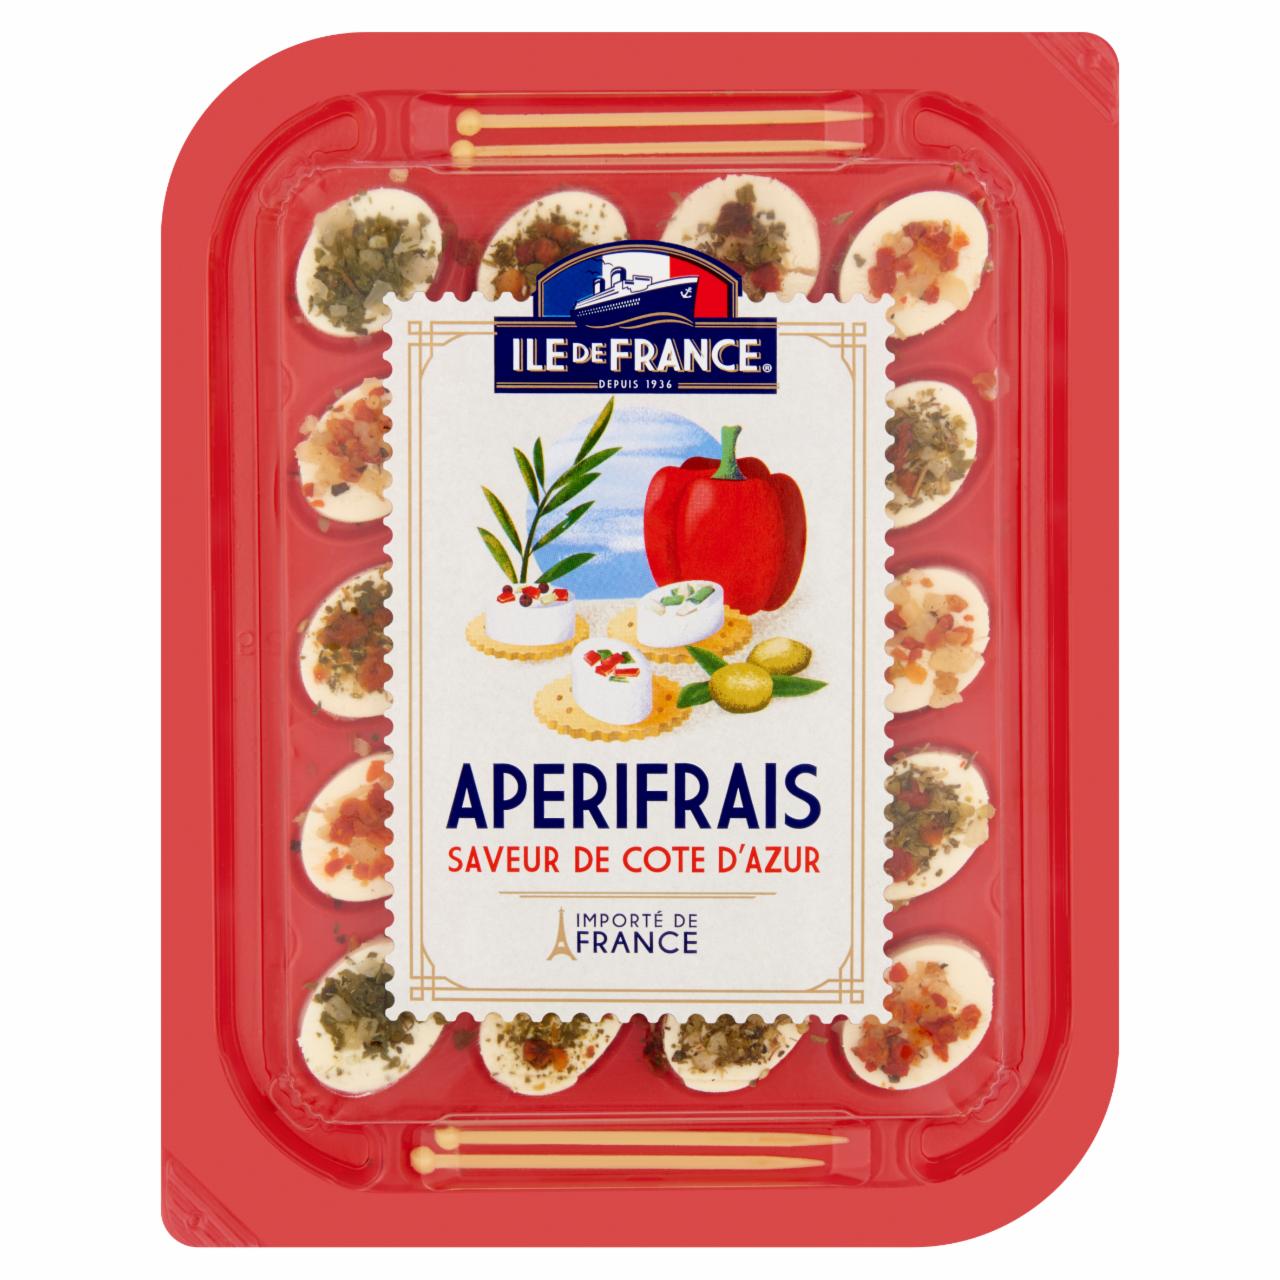 Képek - Ile de France Apérifrais Côte d'Azur sajtspecialitás fűszerekkel, fűszernövényekkel 100 g